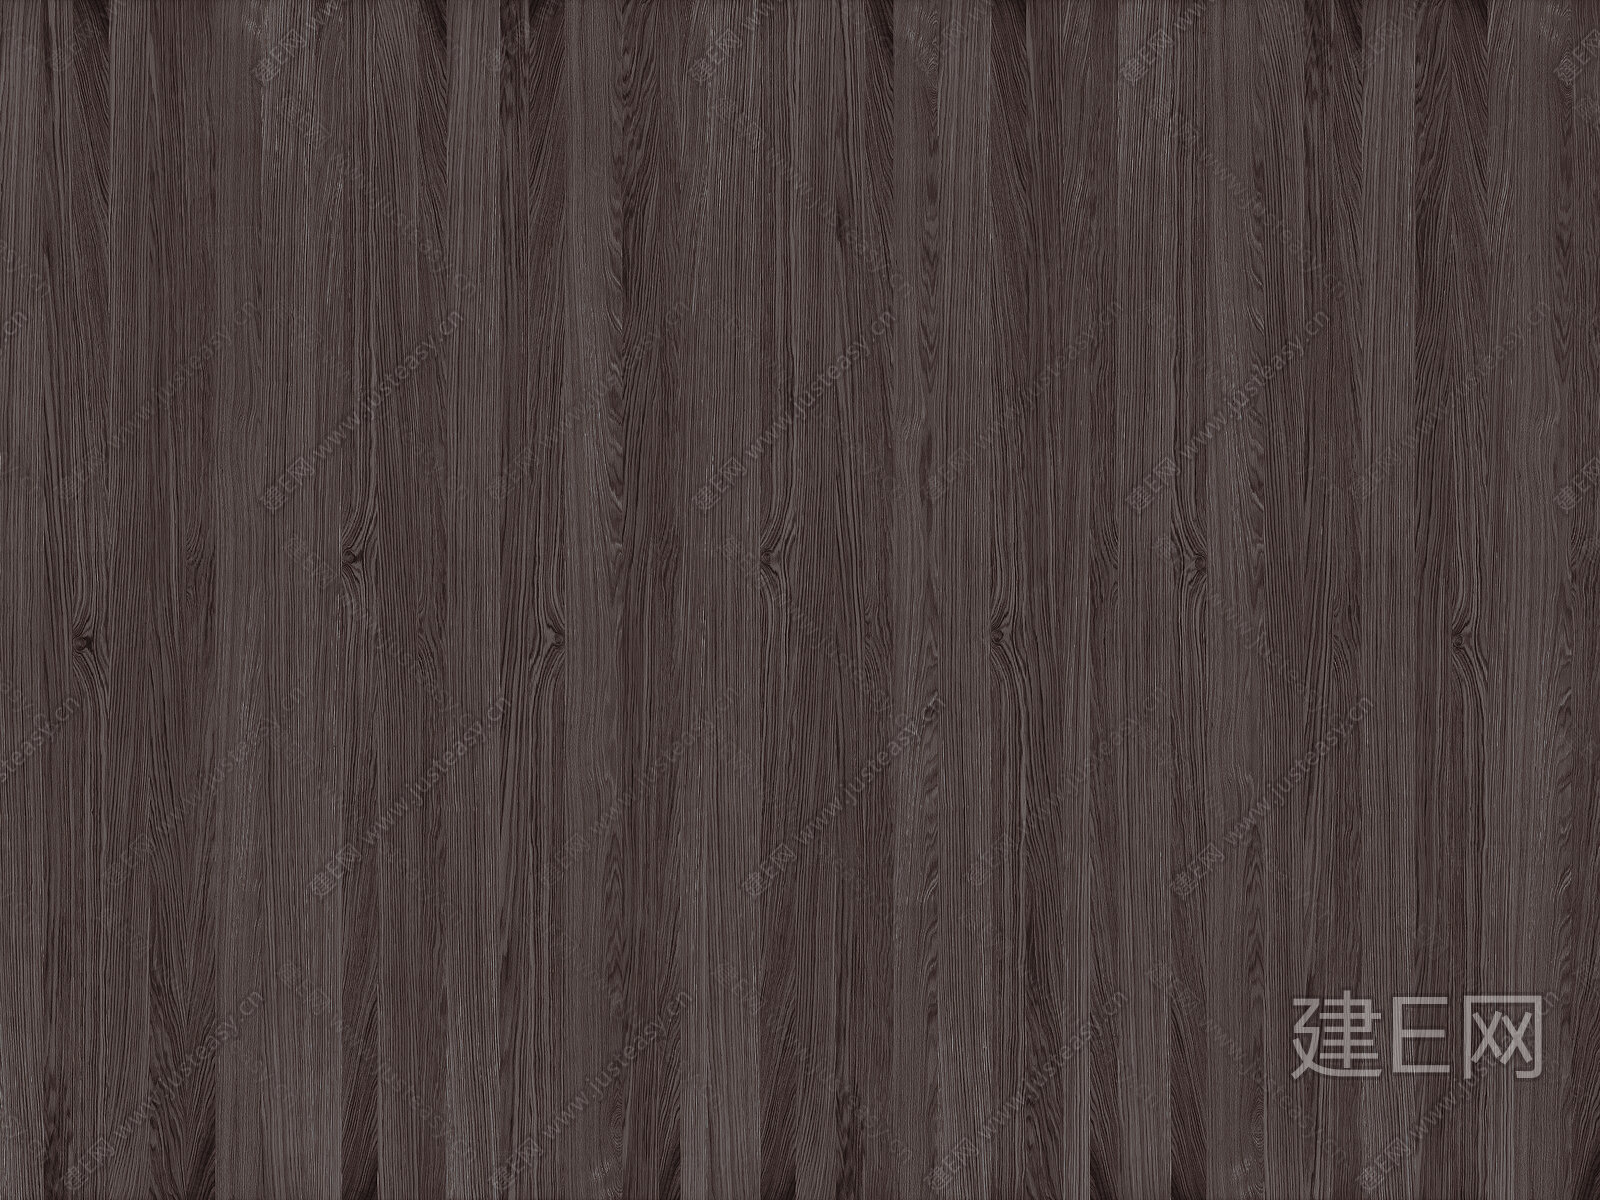 黑色木纹 木纹材质贴图下载-【集简空间】「每日更新」